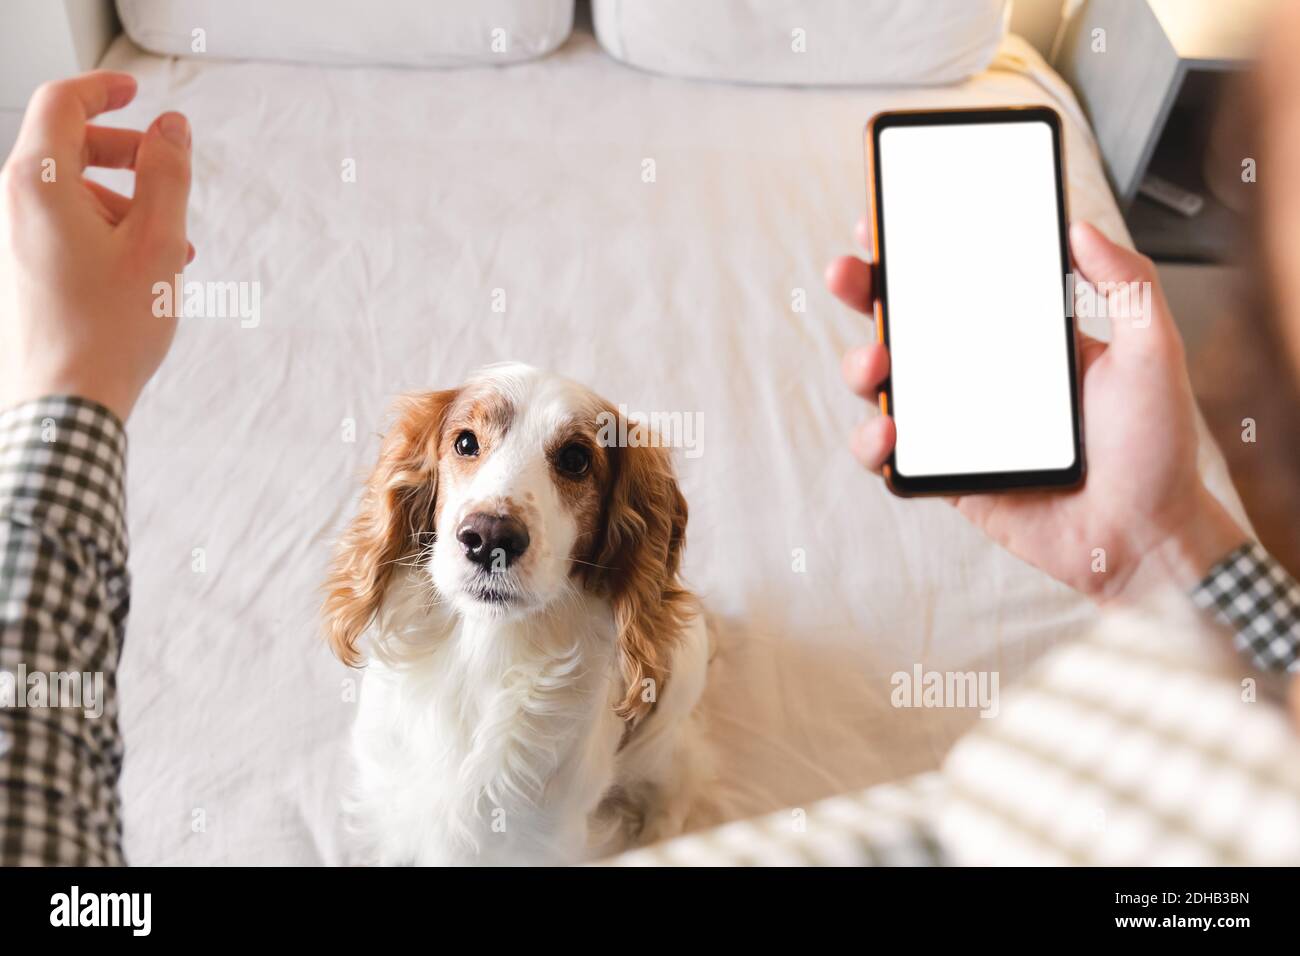 Entrenamiento de perros con una aplicación para smartphone en casa. Vida con mascotas, hombre desarrollando habilidades de concentración con un perro spaniel, programa de entrenamiento para mascotas Foto de stock